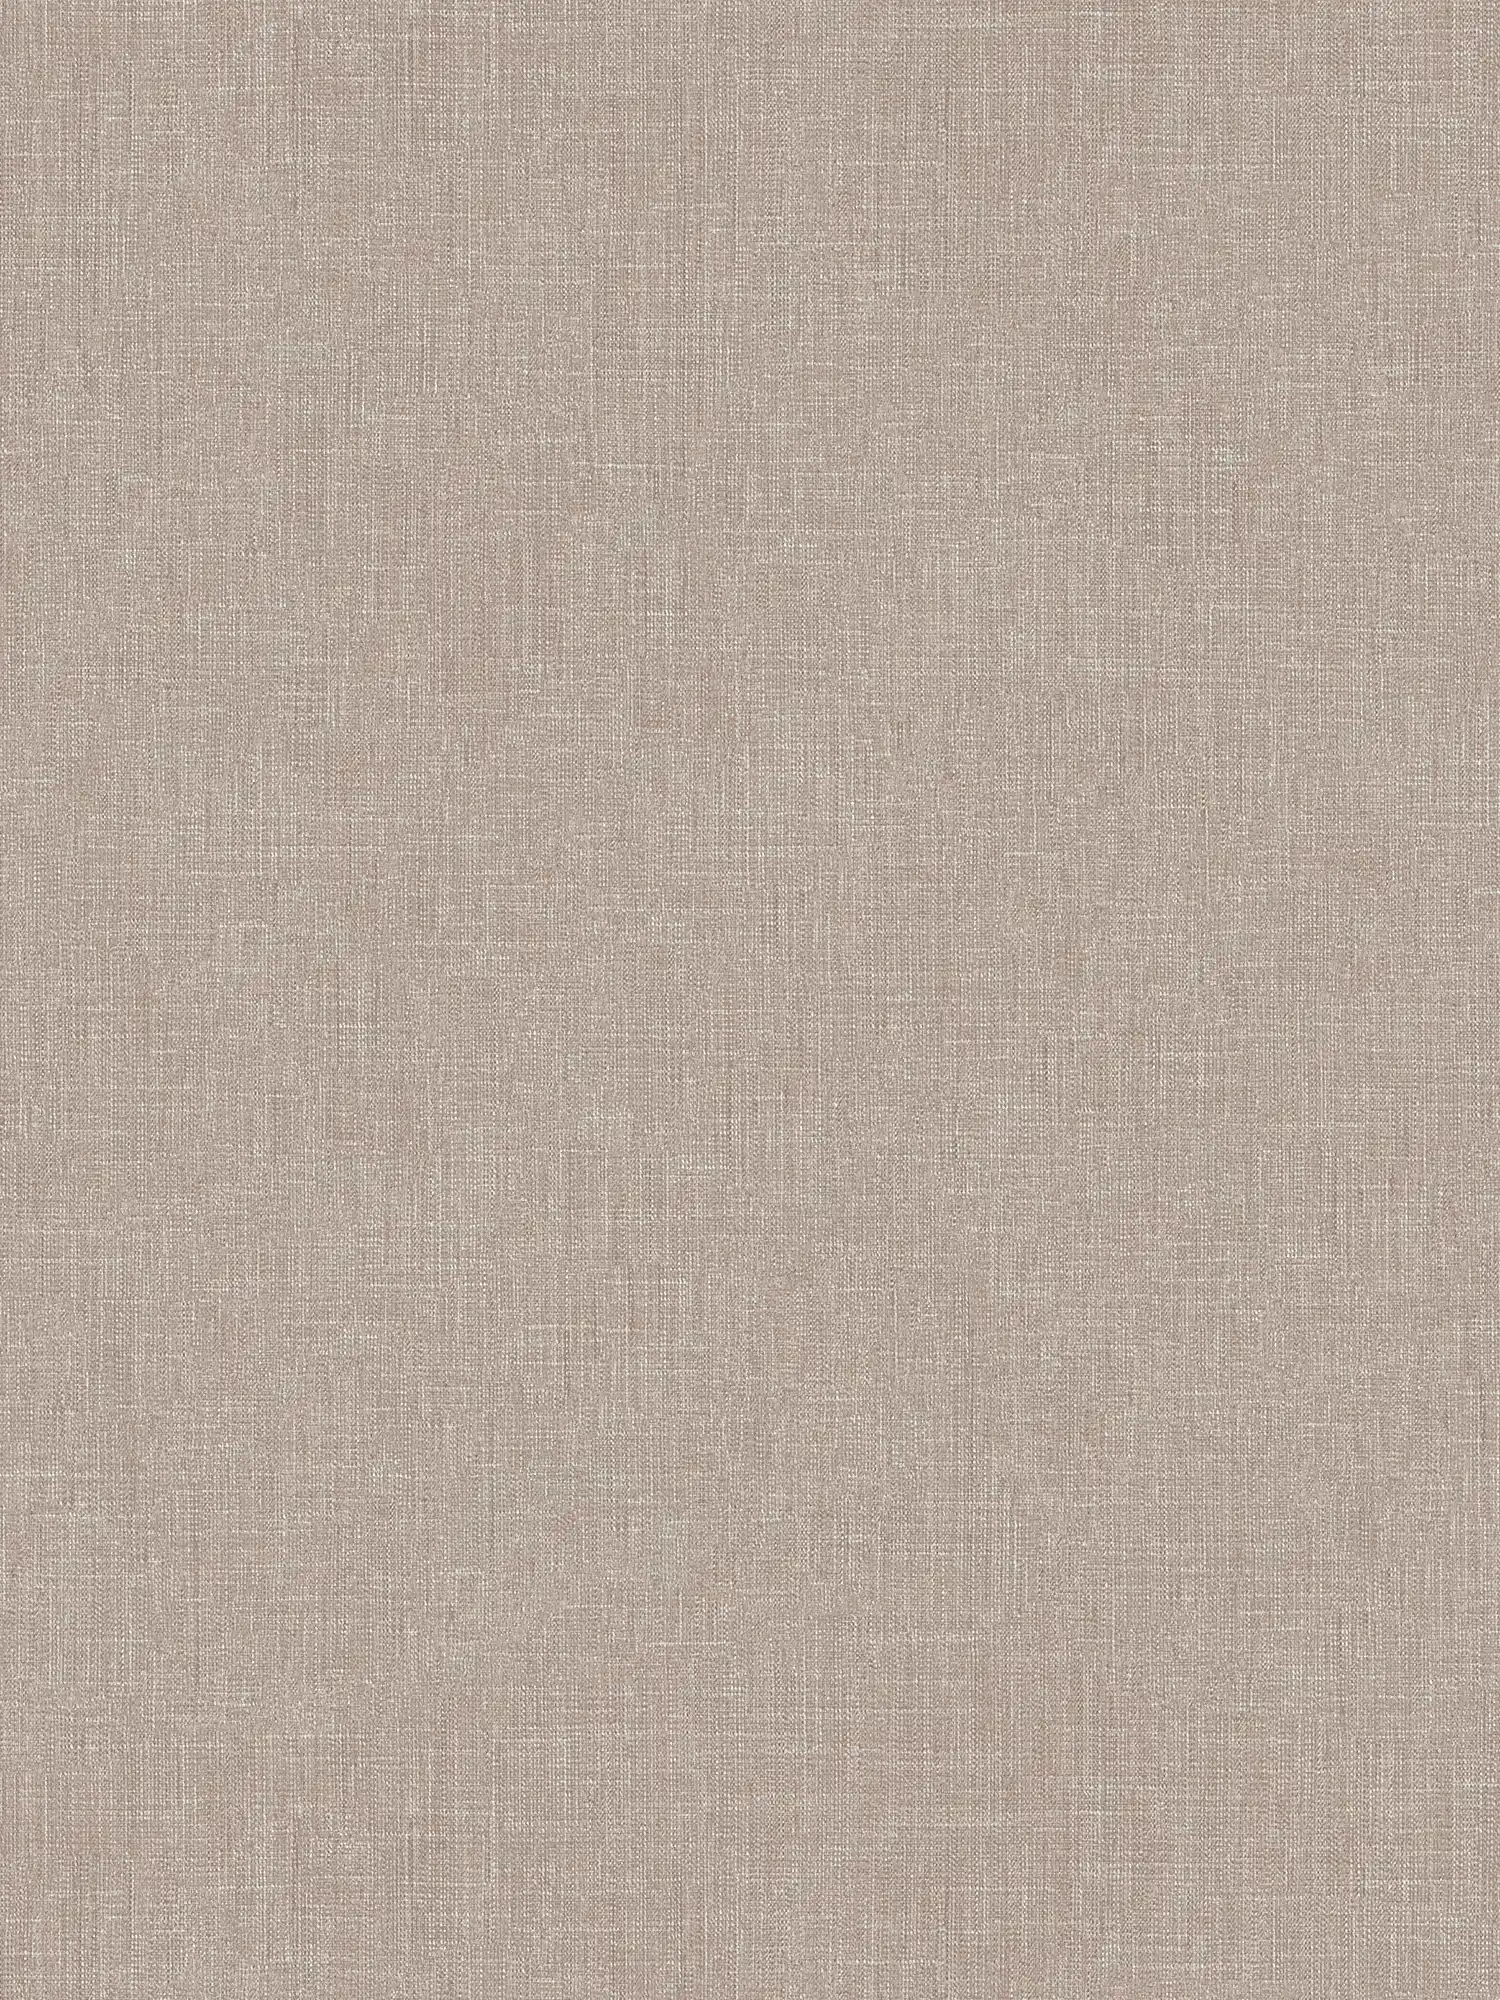 Papier peint chiné gris avec aspect textile & structure
